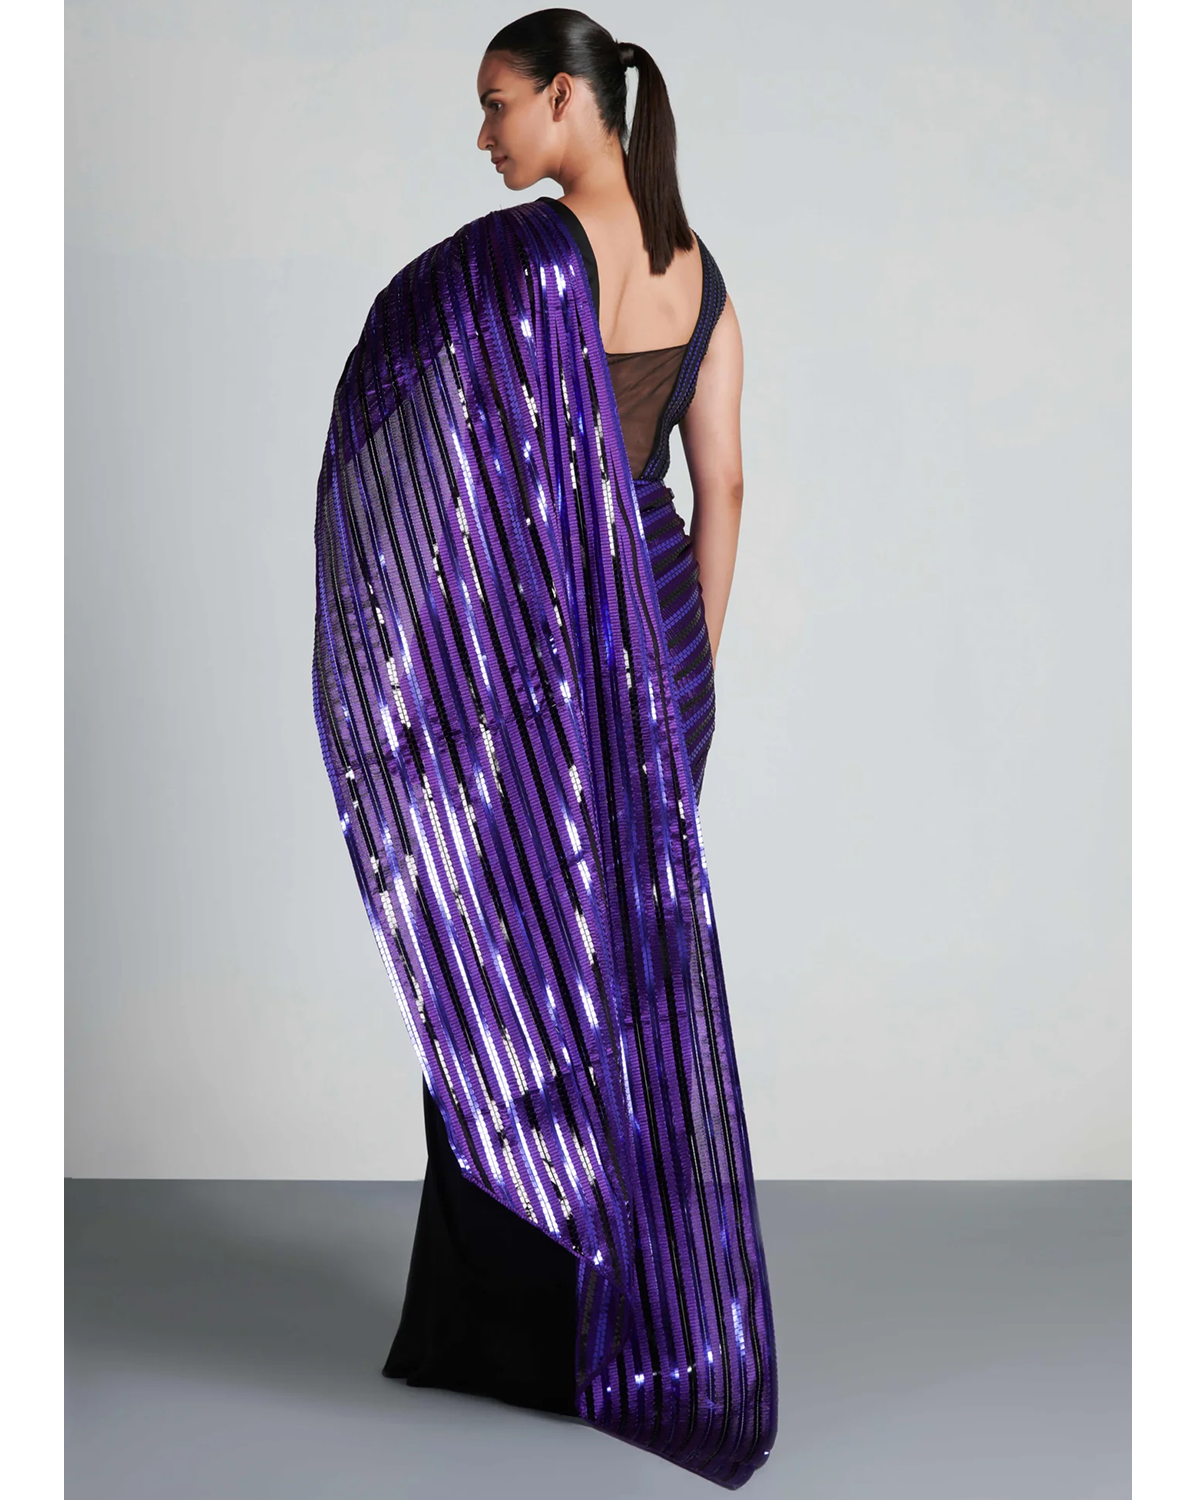 Black & Purple Metallic Winged Sari